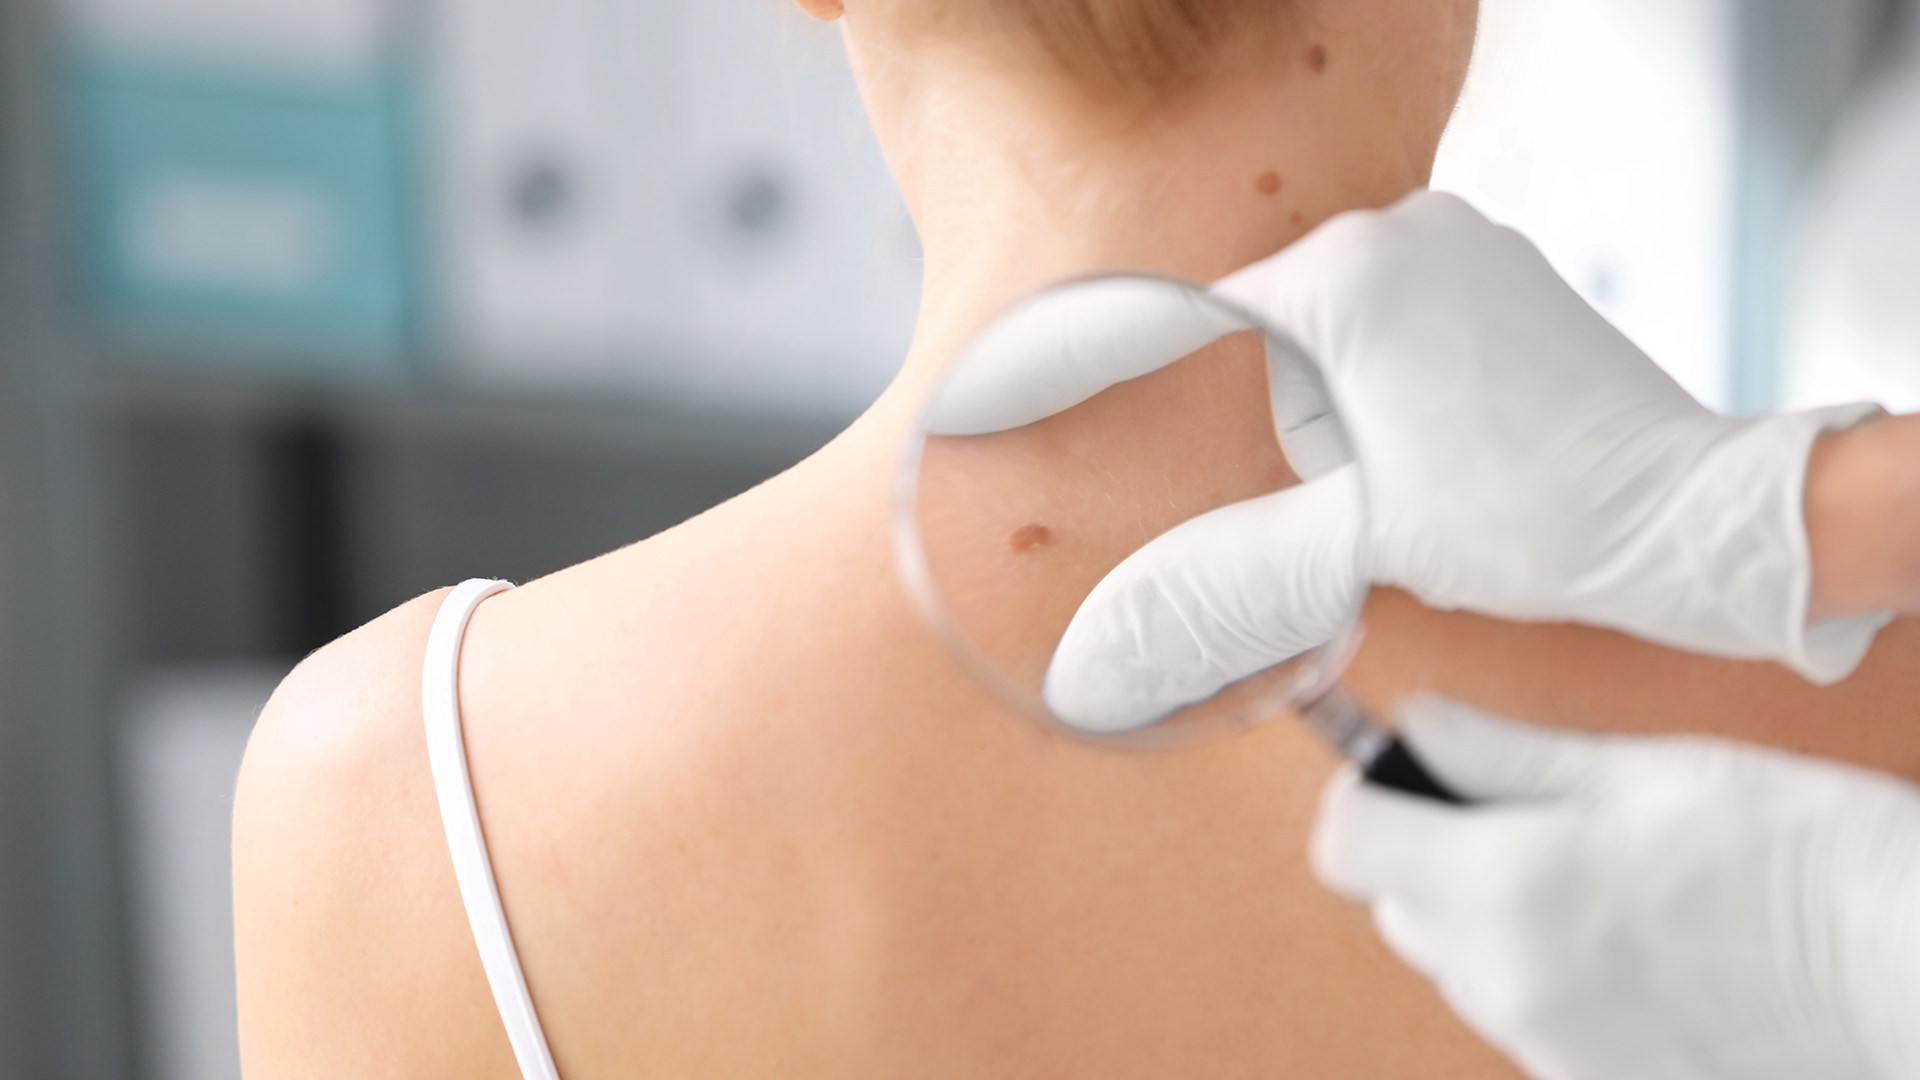 El cáncer de piel, en la mayoría de los casos, es prevenible y curable si es detectado a tiempo (Shutterstock)